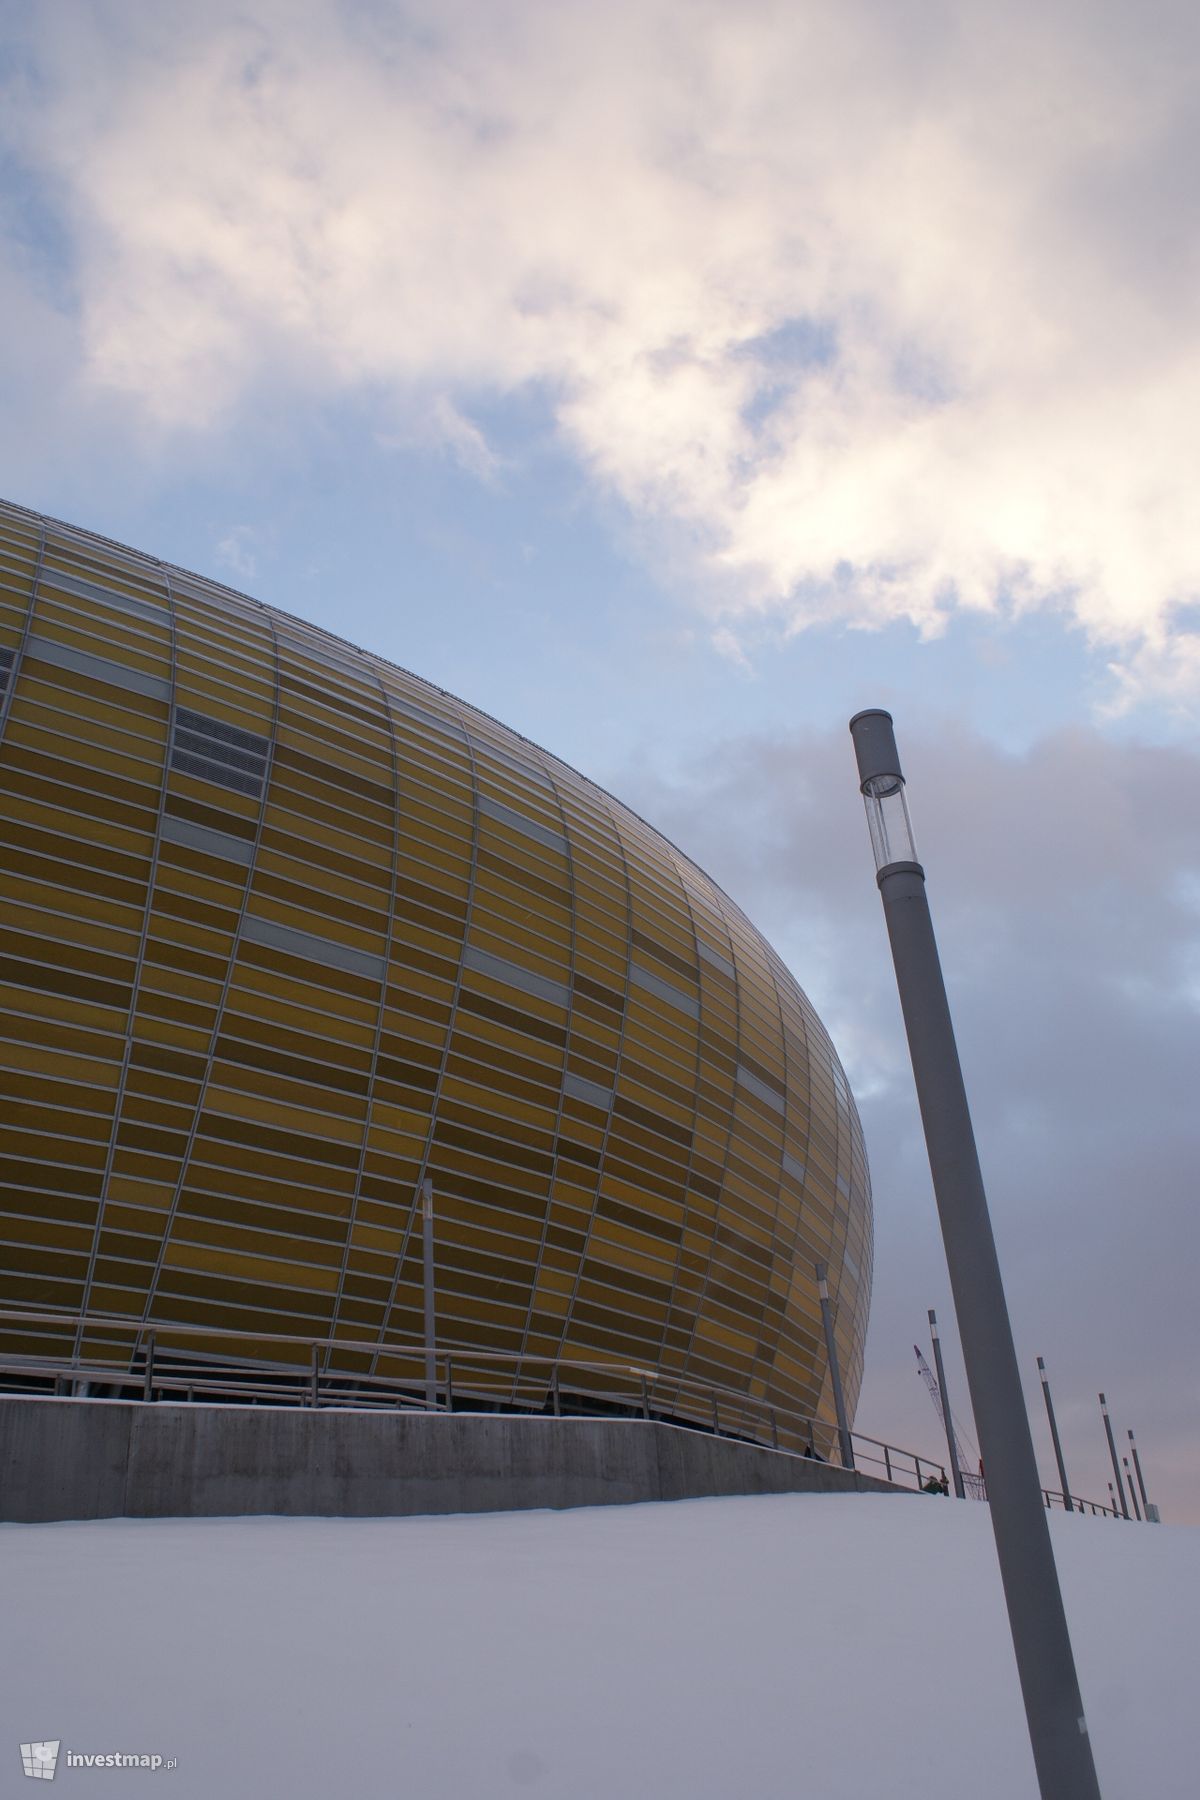 Zdjęcie [Gdańsk] Stadion "PGE Arena Gdańsk" fot. Jan Hawełko 